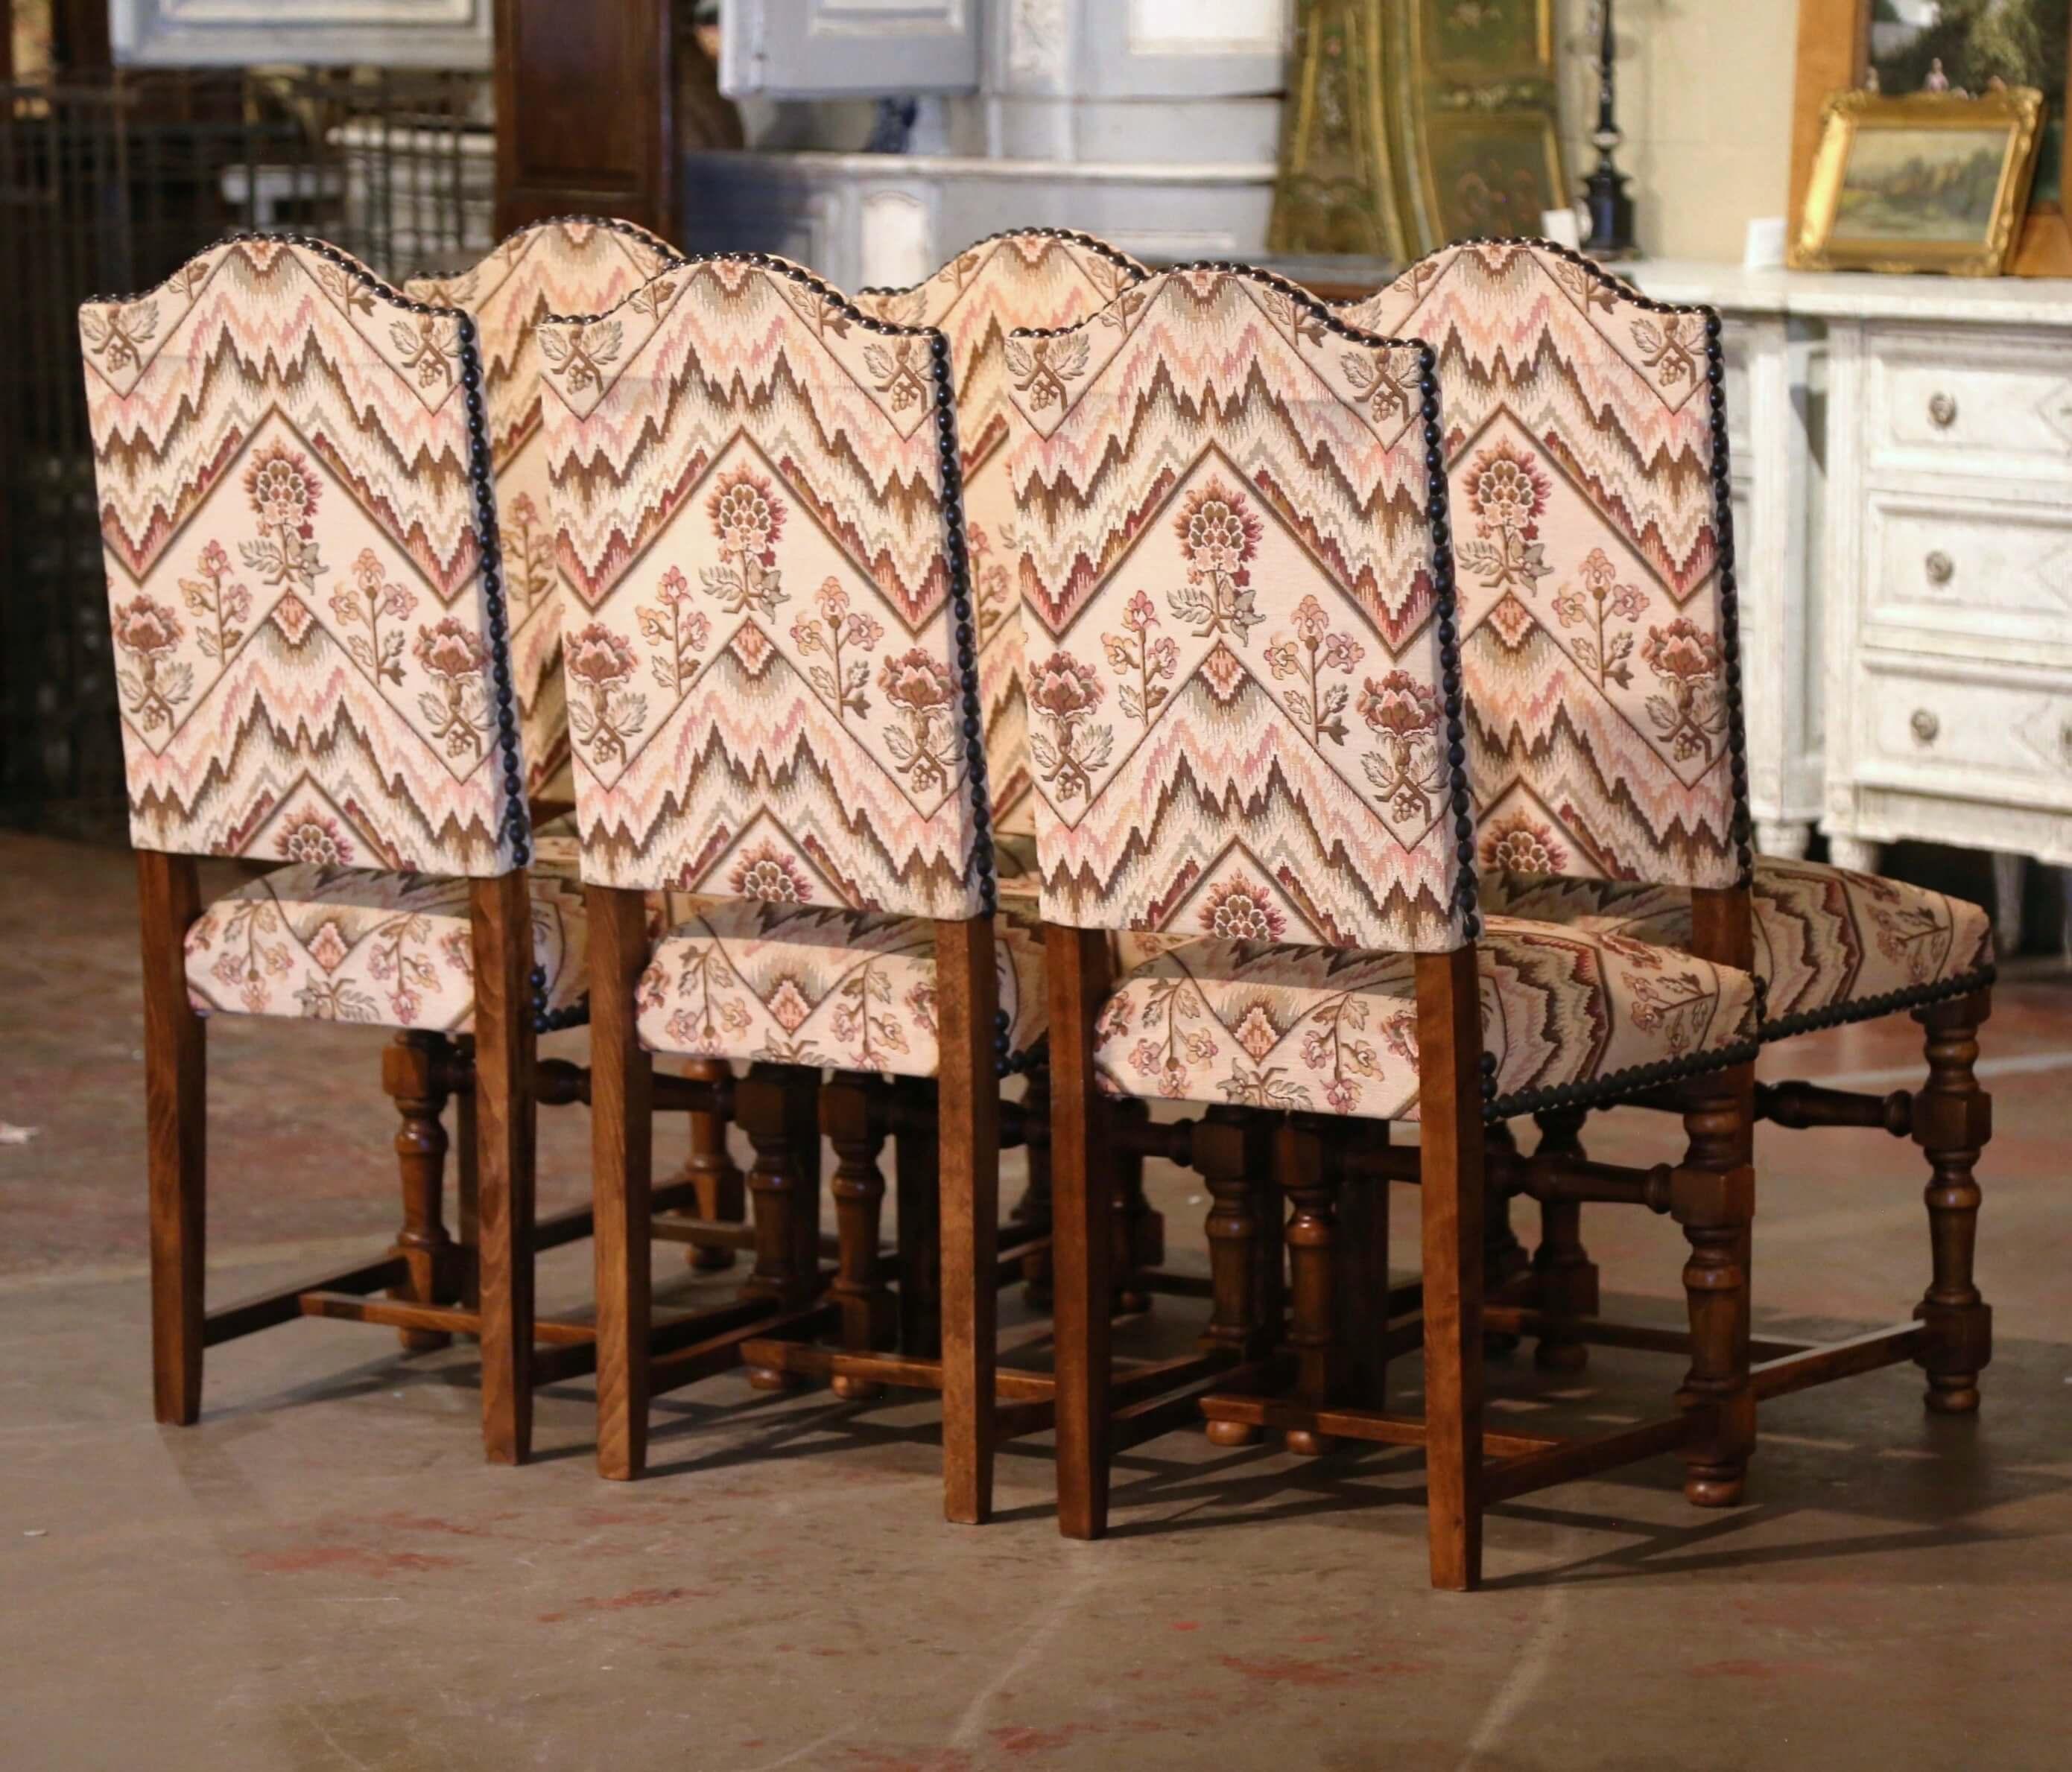 Habillez un petit déjeuner ou une salle à manger avec cette élégante suite de chaises d'appoint ! Fabriquée en France vers 1970 et en bois de noyer, chaque chaise repose sur des pieds tournés sculptés se terminant par des pieds en chignon au-dessus